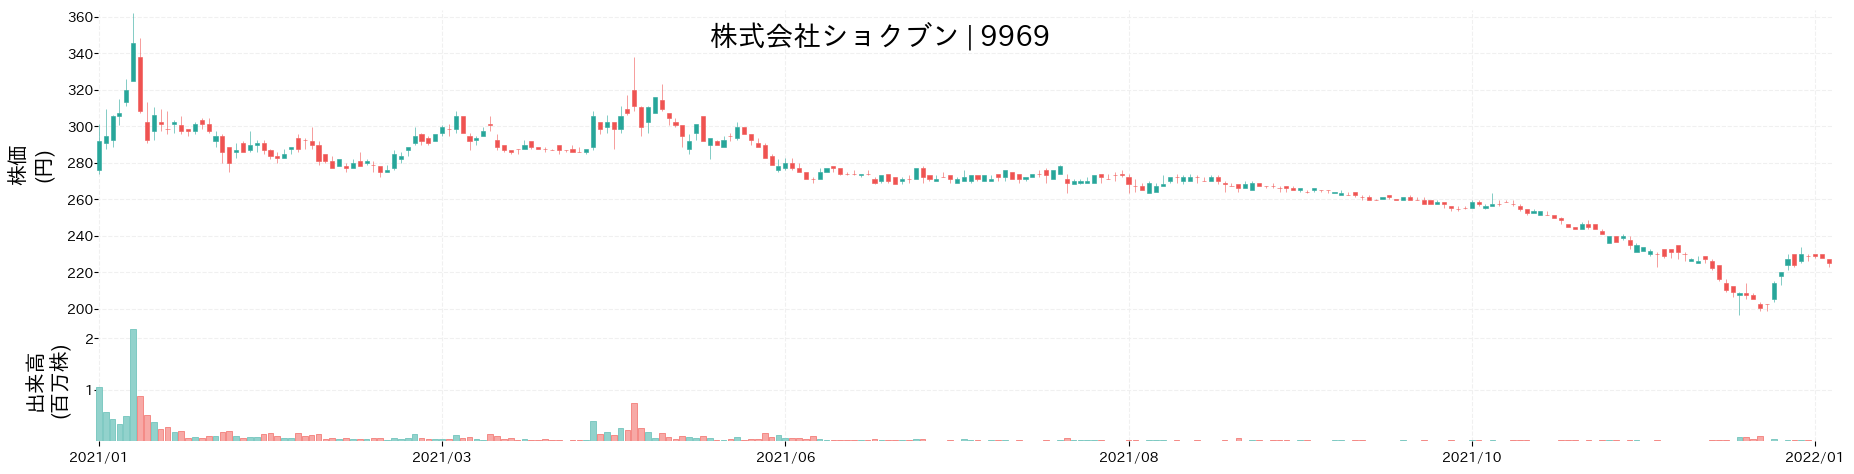 ショクブンの株価推移(2021)